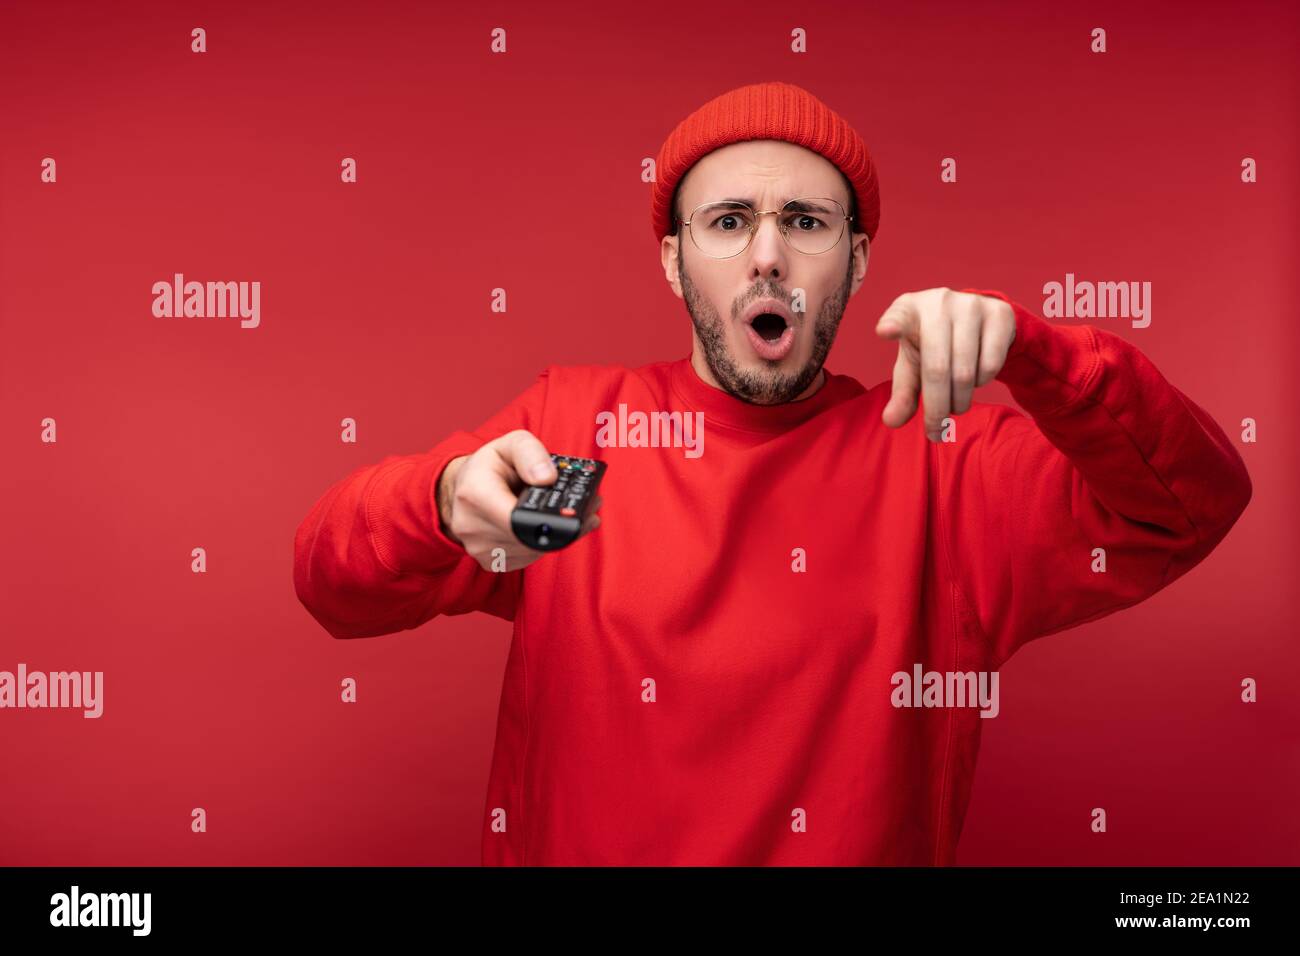 Photo de l'homme agité avec la barbe dans des vêtements rouges pointant les doigts vers l'appareil photo tient la console de télévision avec surprise et la bouche ouverte, isolée sur le rouge Banque D'Images